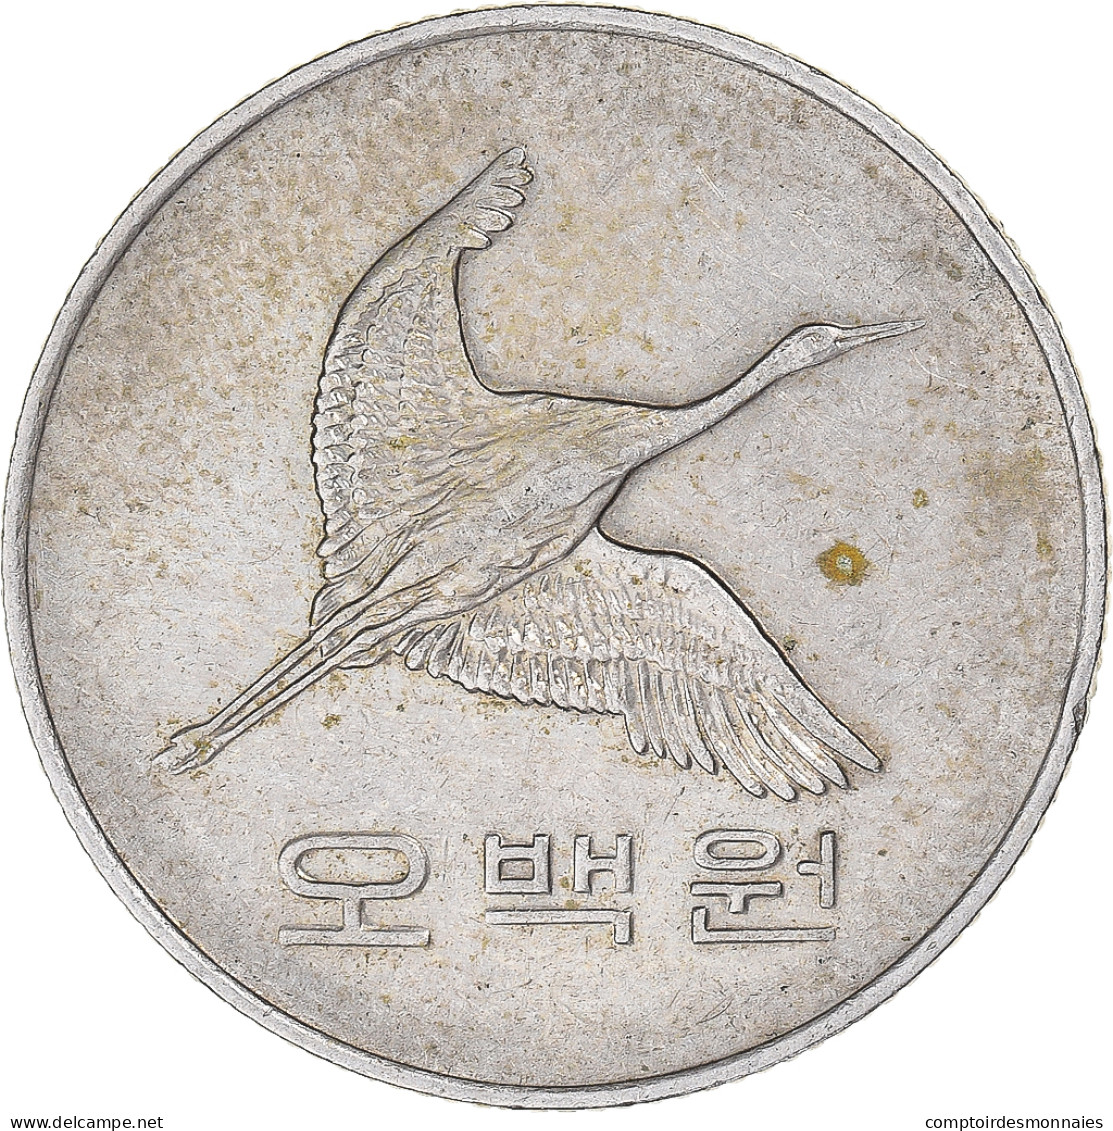 Monnaie, Corée, 500 Won, 1984 - Coreal Del Sur